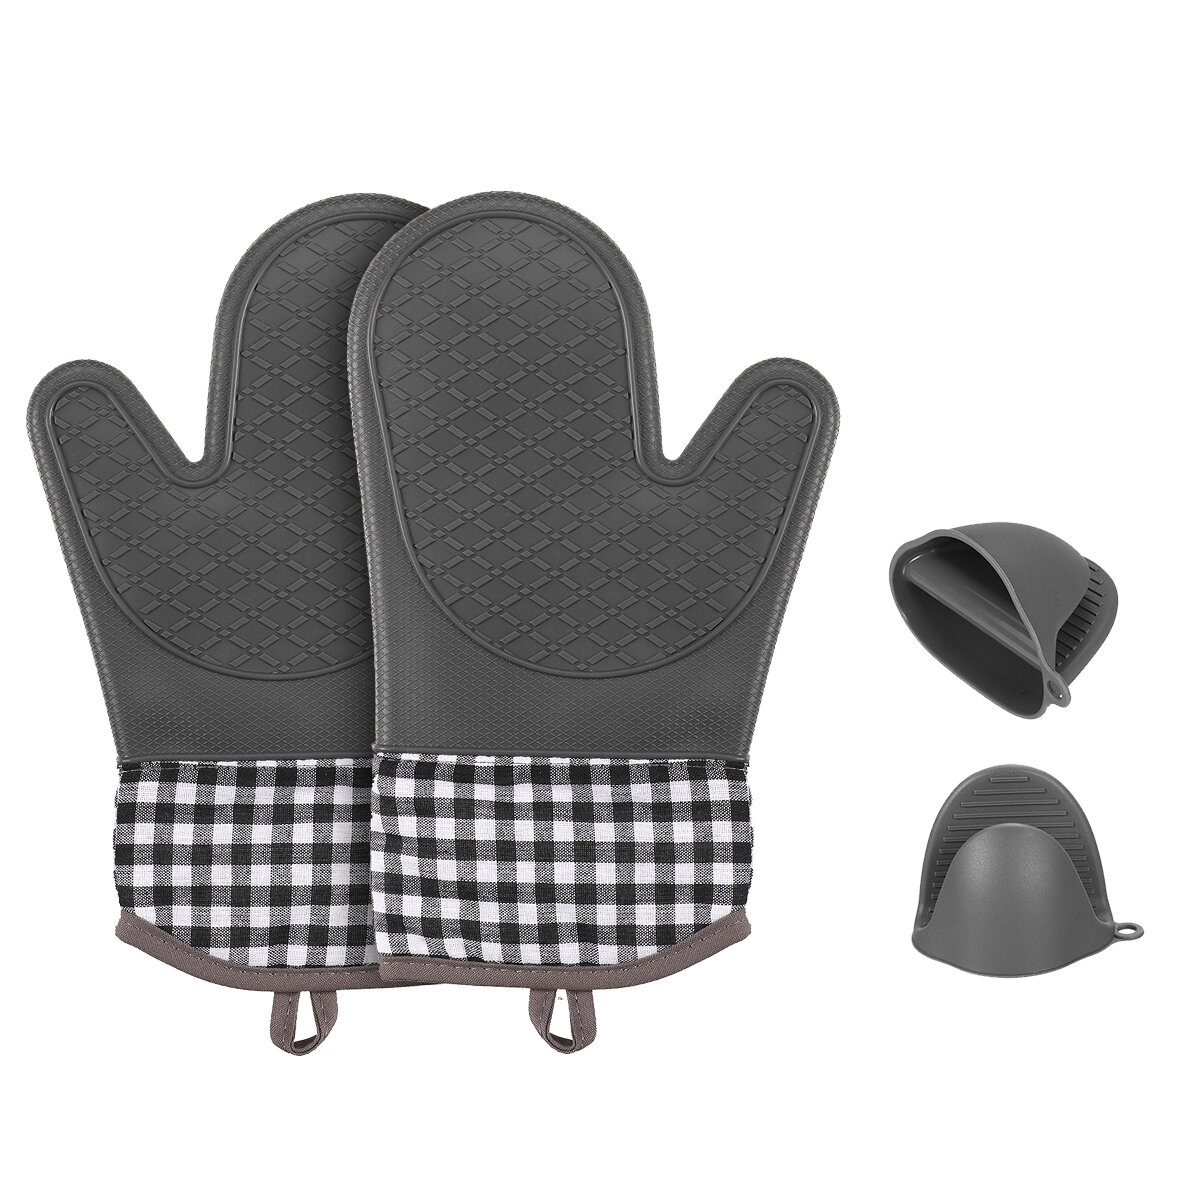 Juego de 4 guantes de silicona para aislamiento térmico para horno, camping, picnic y barbacoa